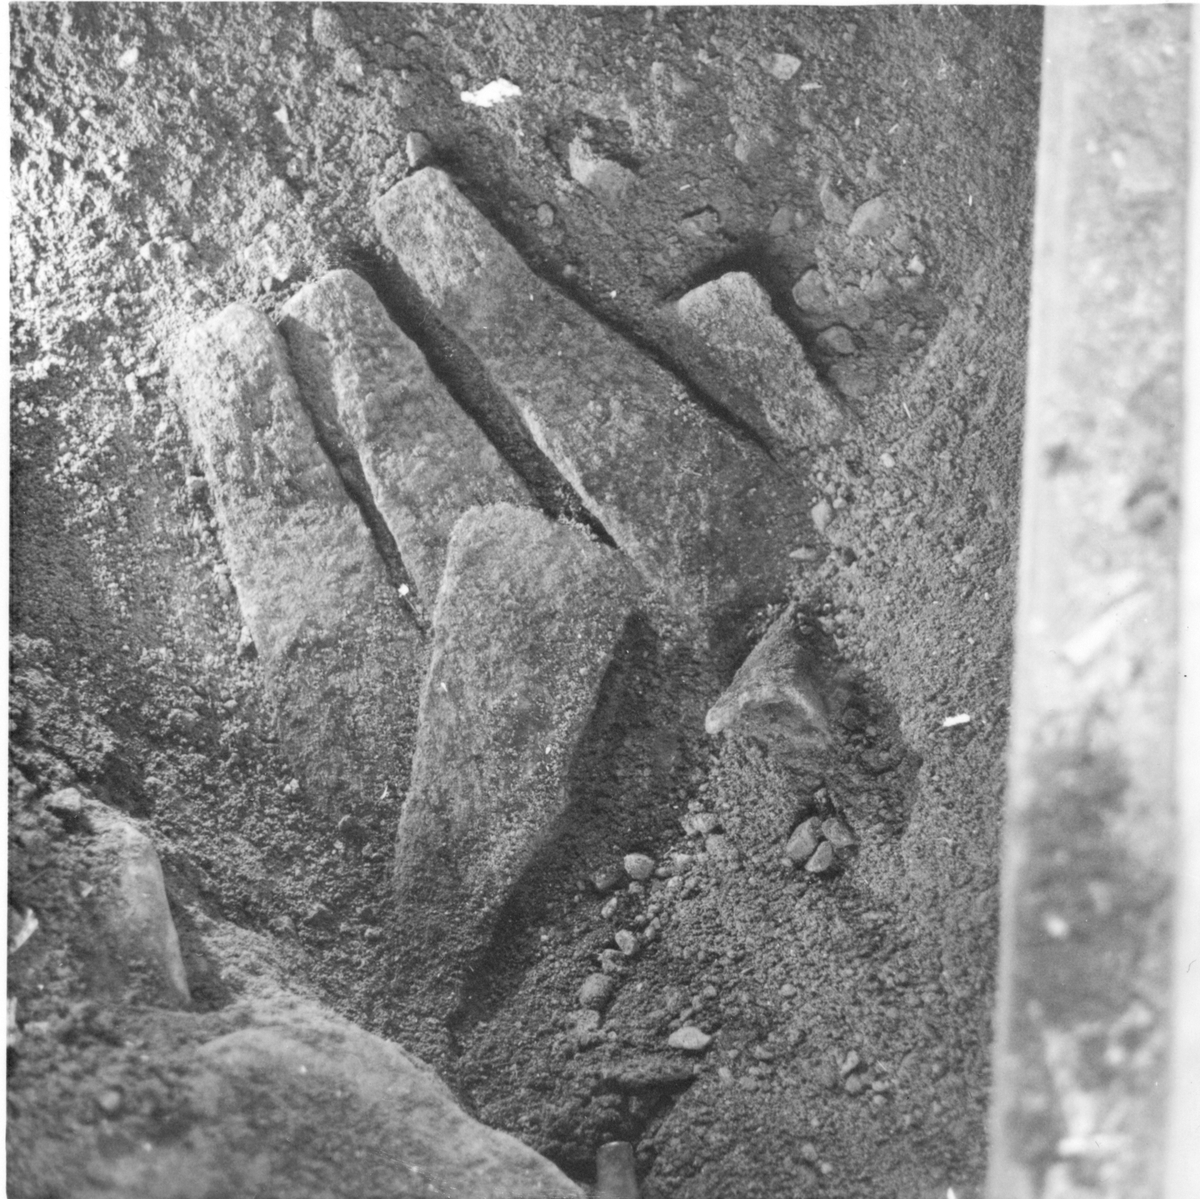 Västbyggeby 2:33, N. Valbo
6 av 43 ämnesjärnena hittade under Storfarsgården i november 1967